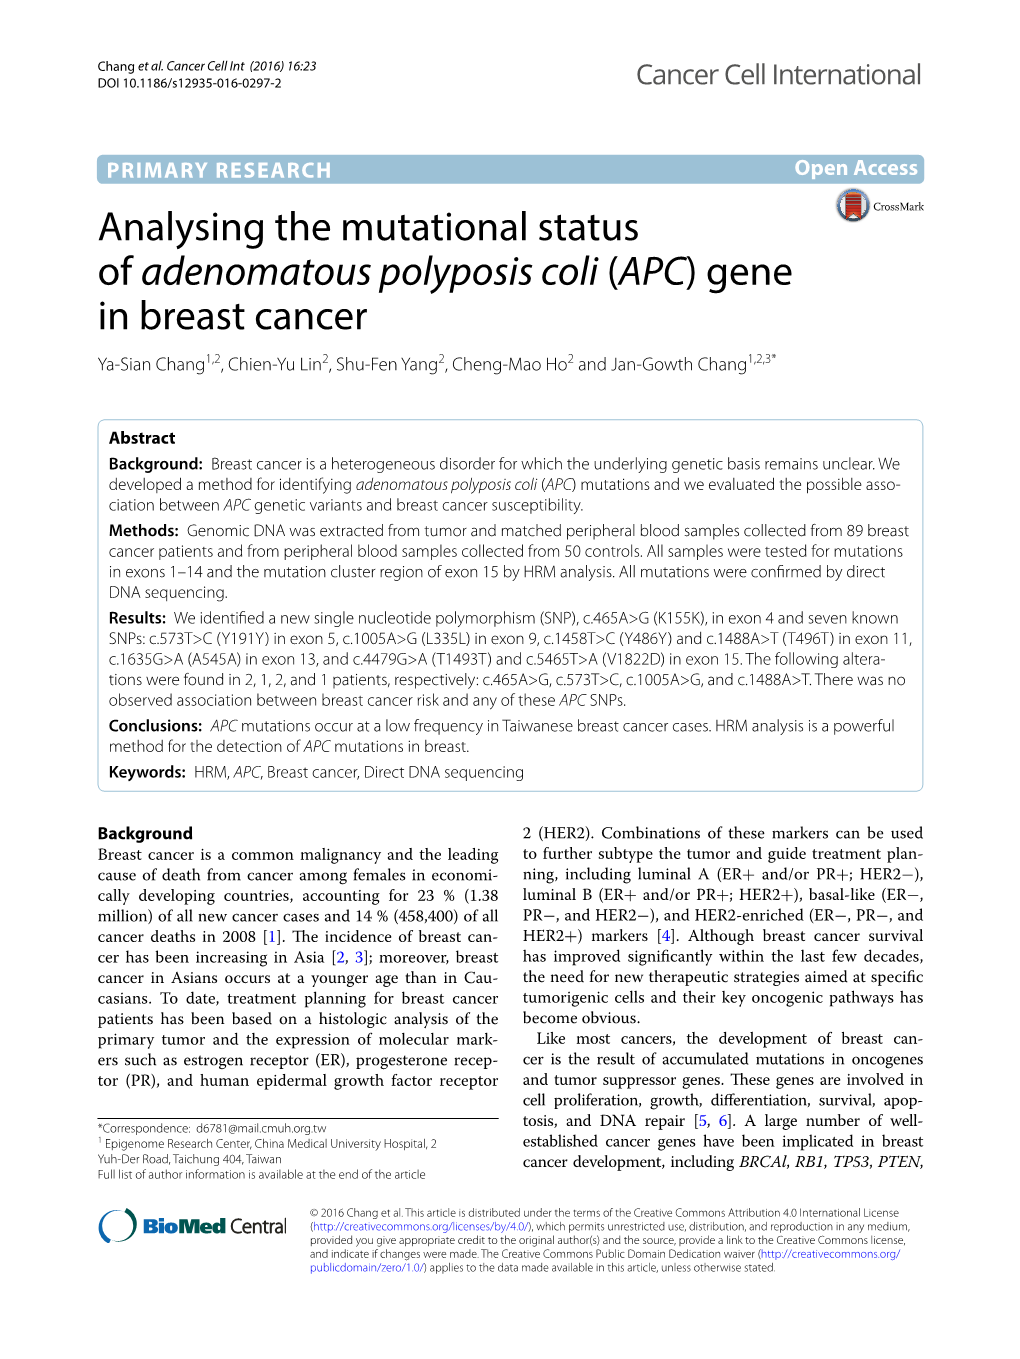 Analysing the Mutational Status of Adenomatous Polyposis Coli (APC